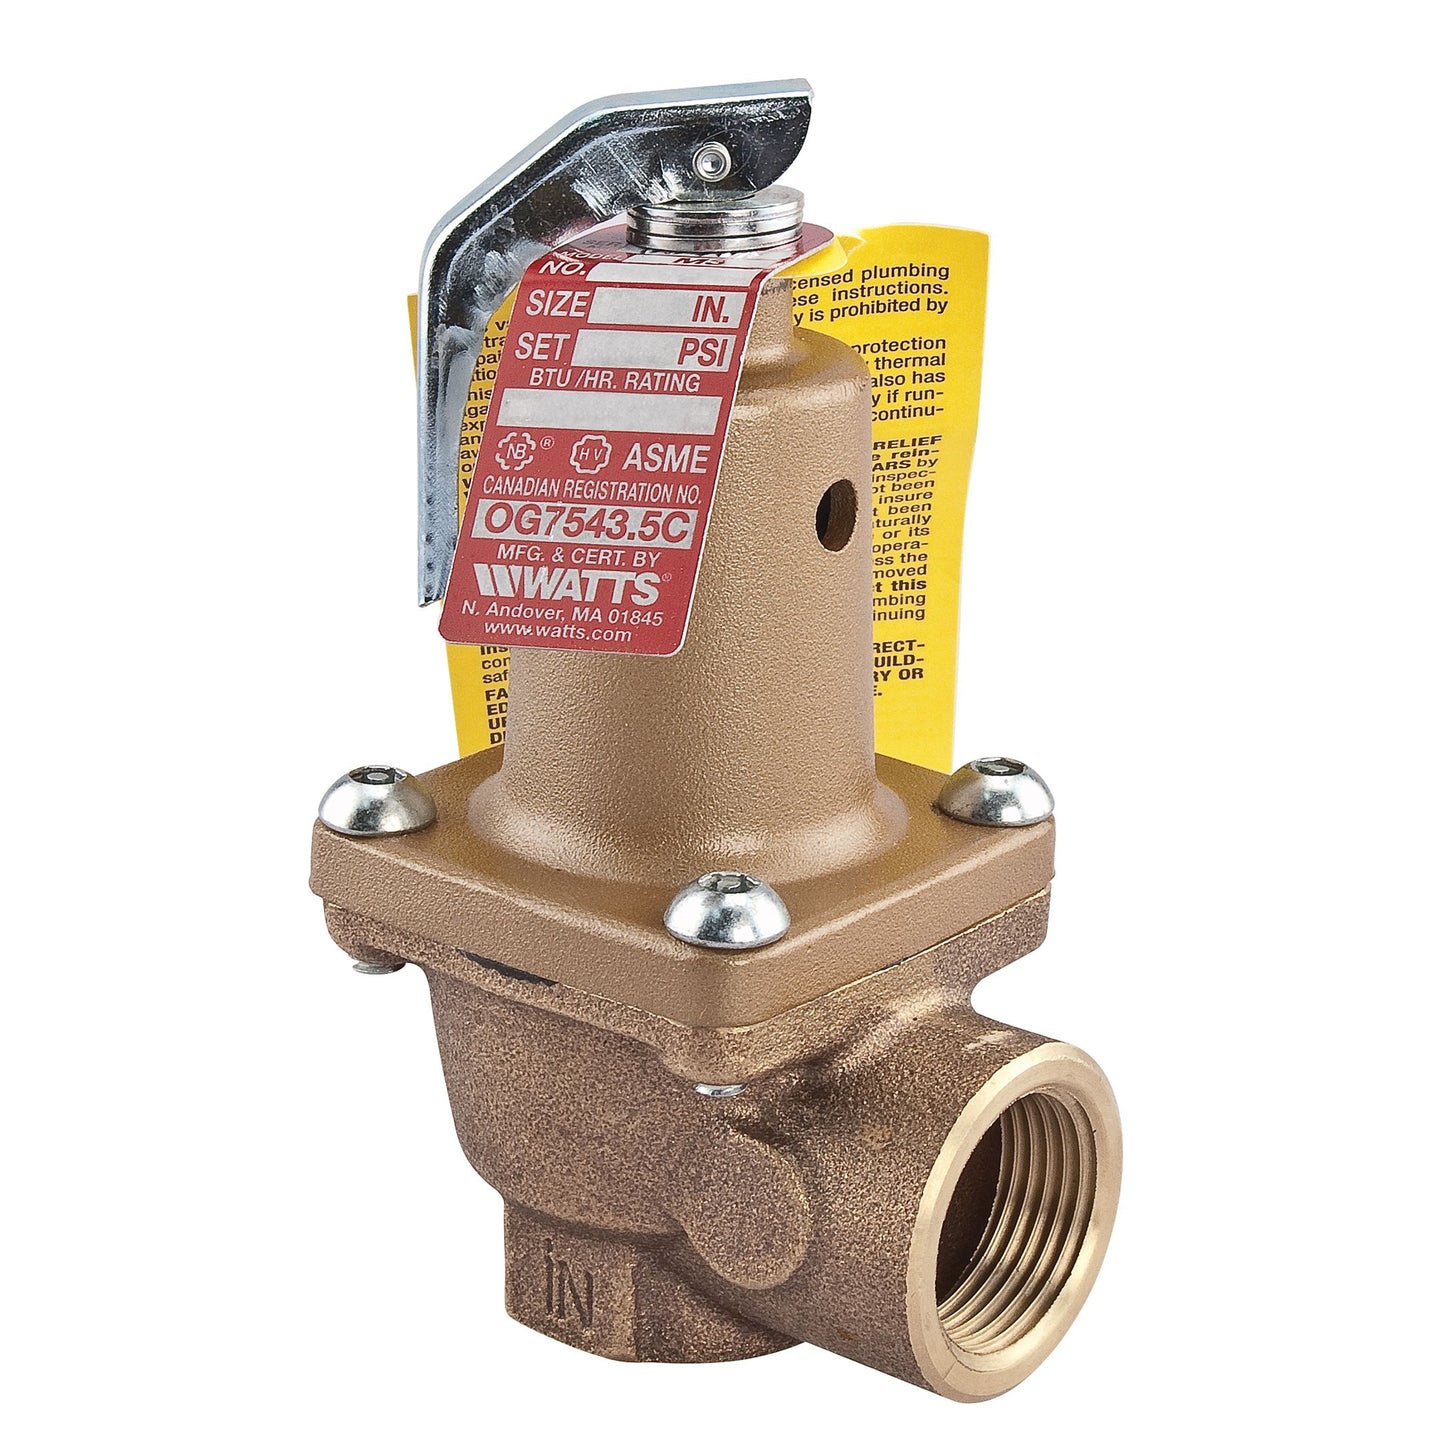 0275464 - 174A-150 1" Bronze Boiler Pressure Relief Valve, 150 PSI